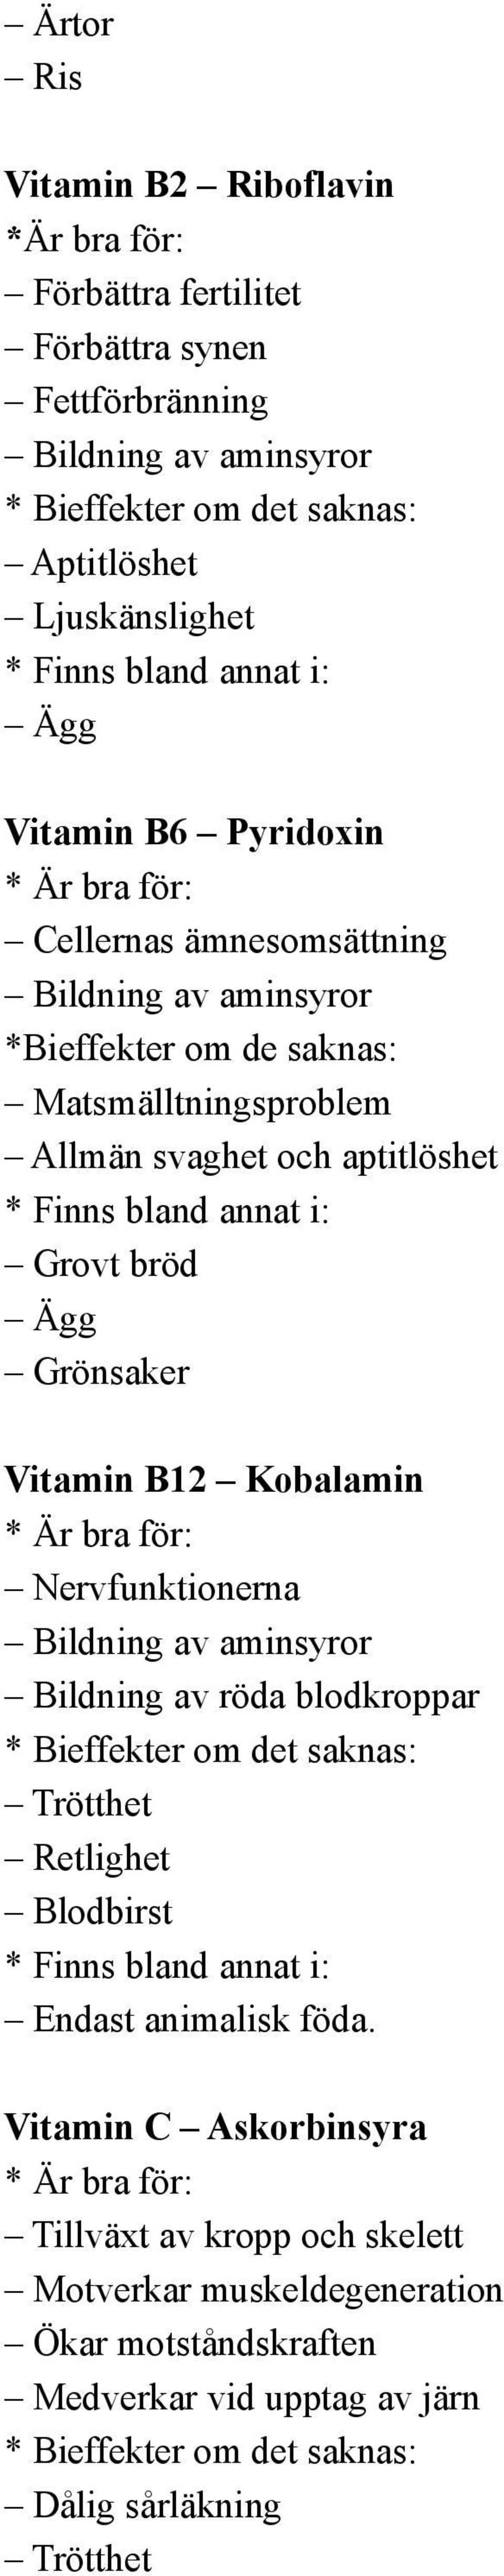 Grönsaker Vitamin B12 Kobalamin : Nervfunktionerna Bildning av röda blodkroppar Retlighet Blodbirst : Endast animalisk